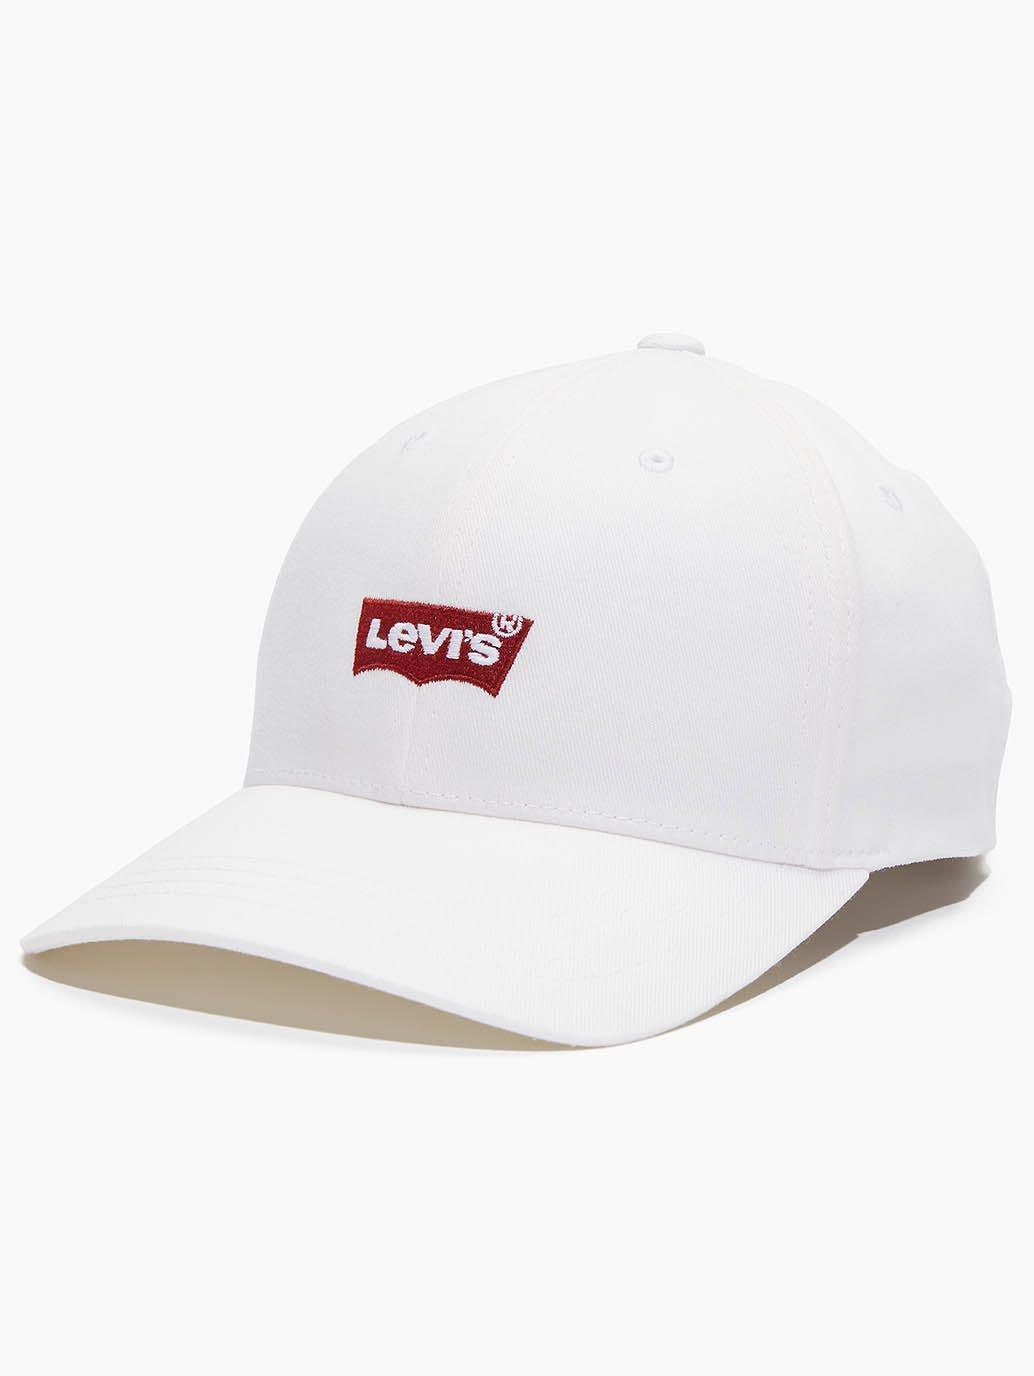 Buy Levi's® Men's Flexfit Cap with Batwing Logo | Levi’s® Official ...